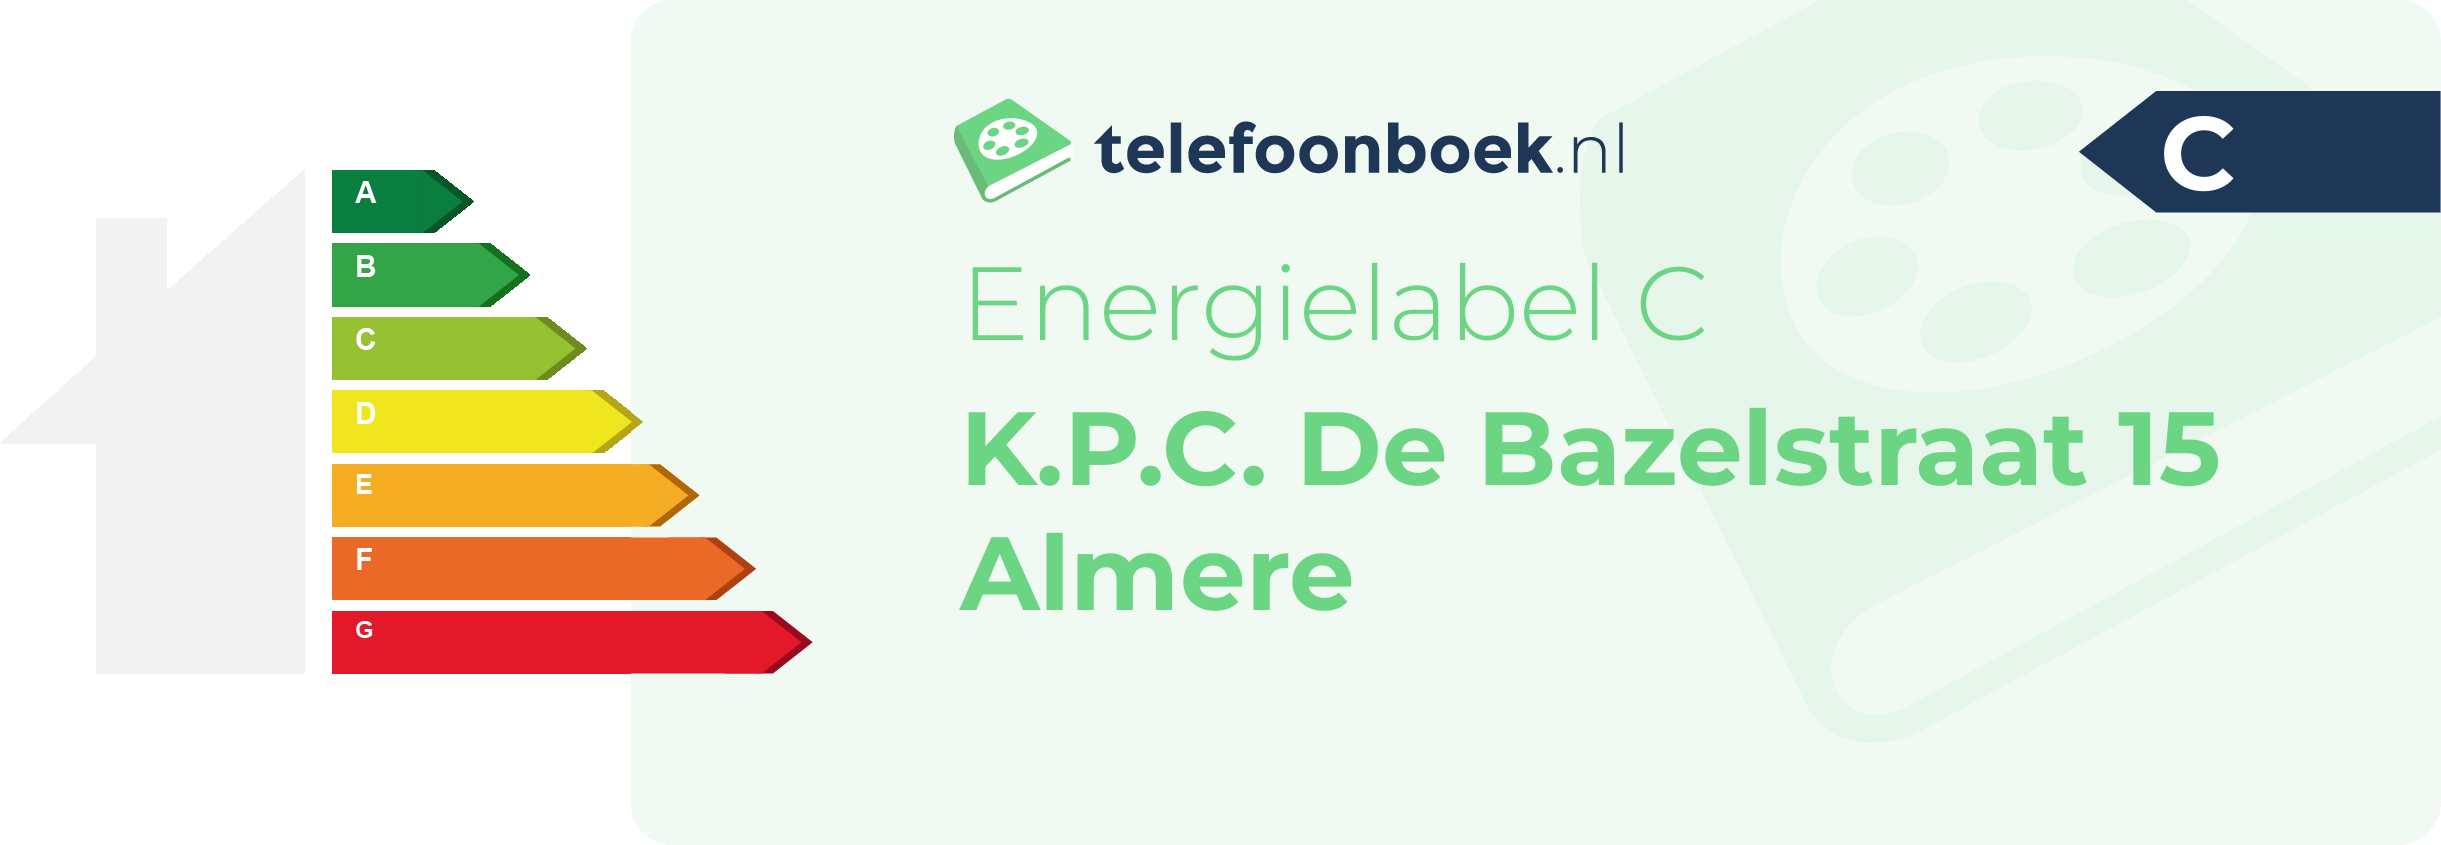 Energielabel K.P.C. De Bazelstraat 15 Almere